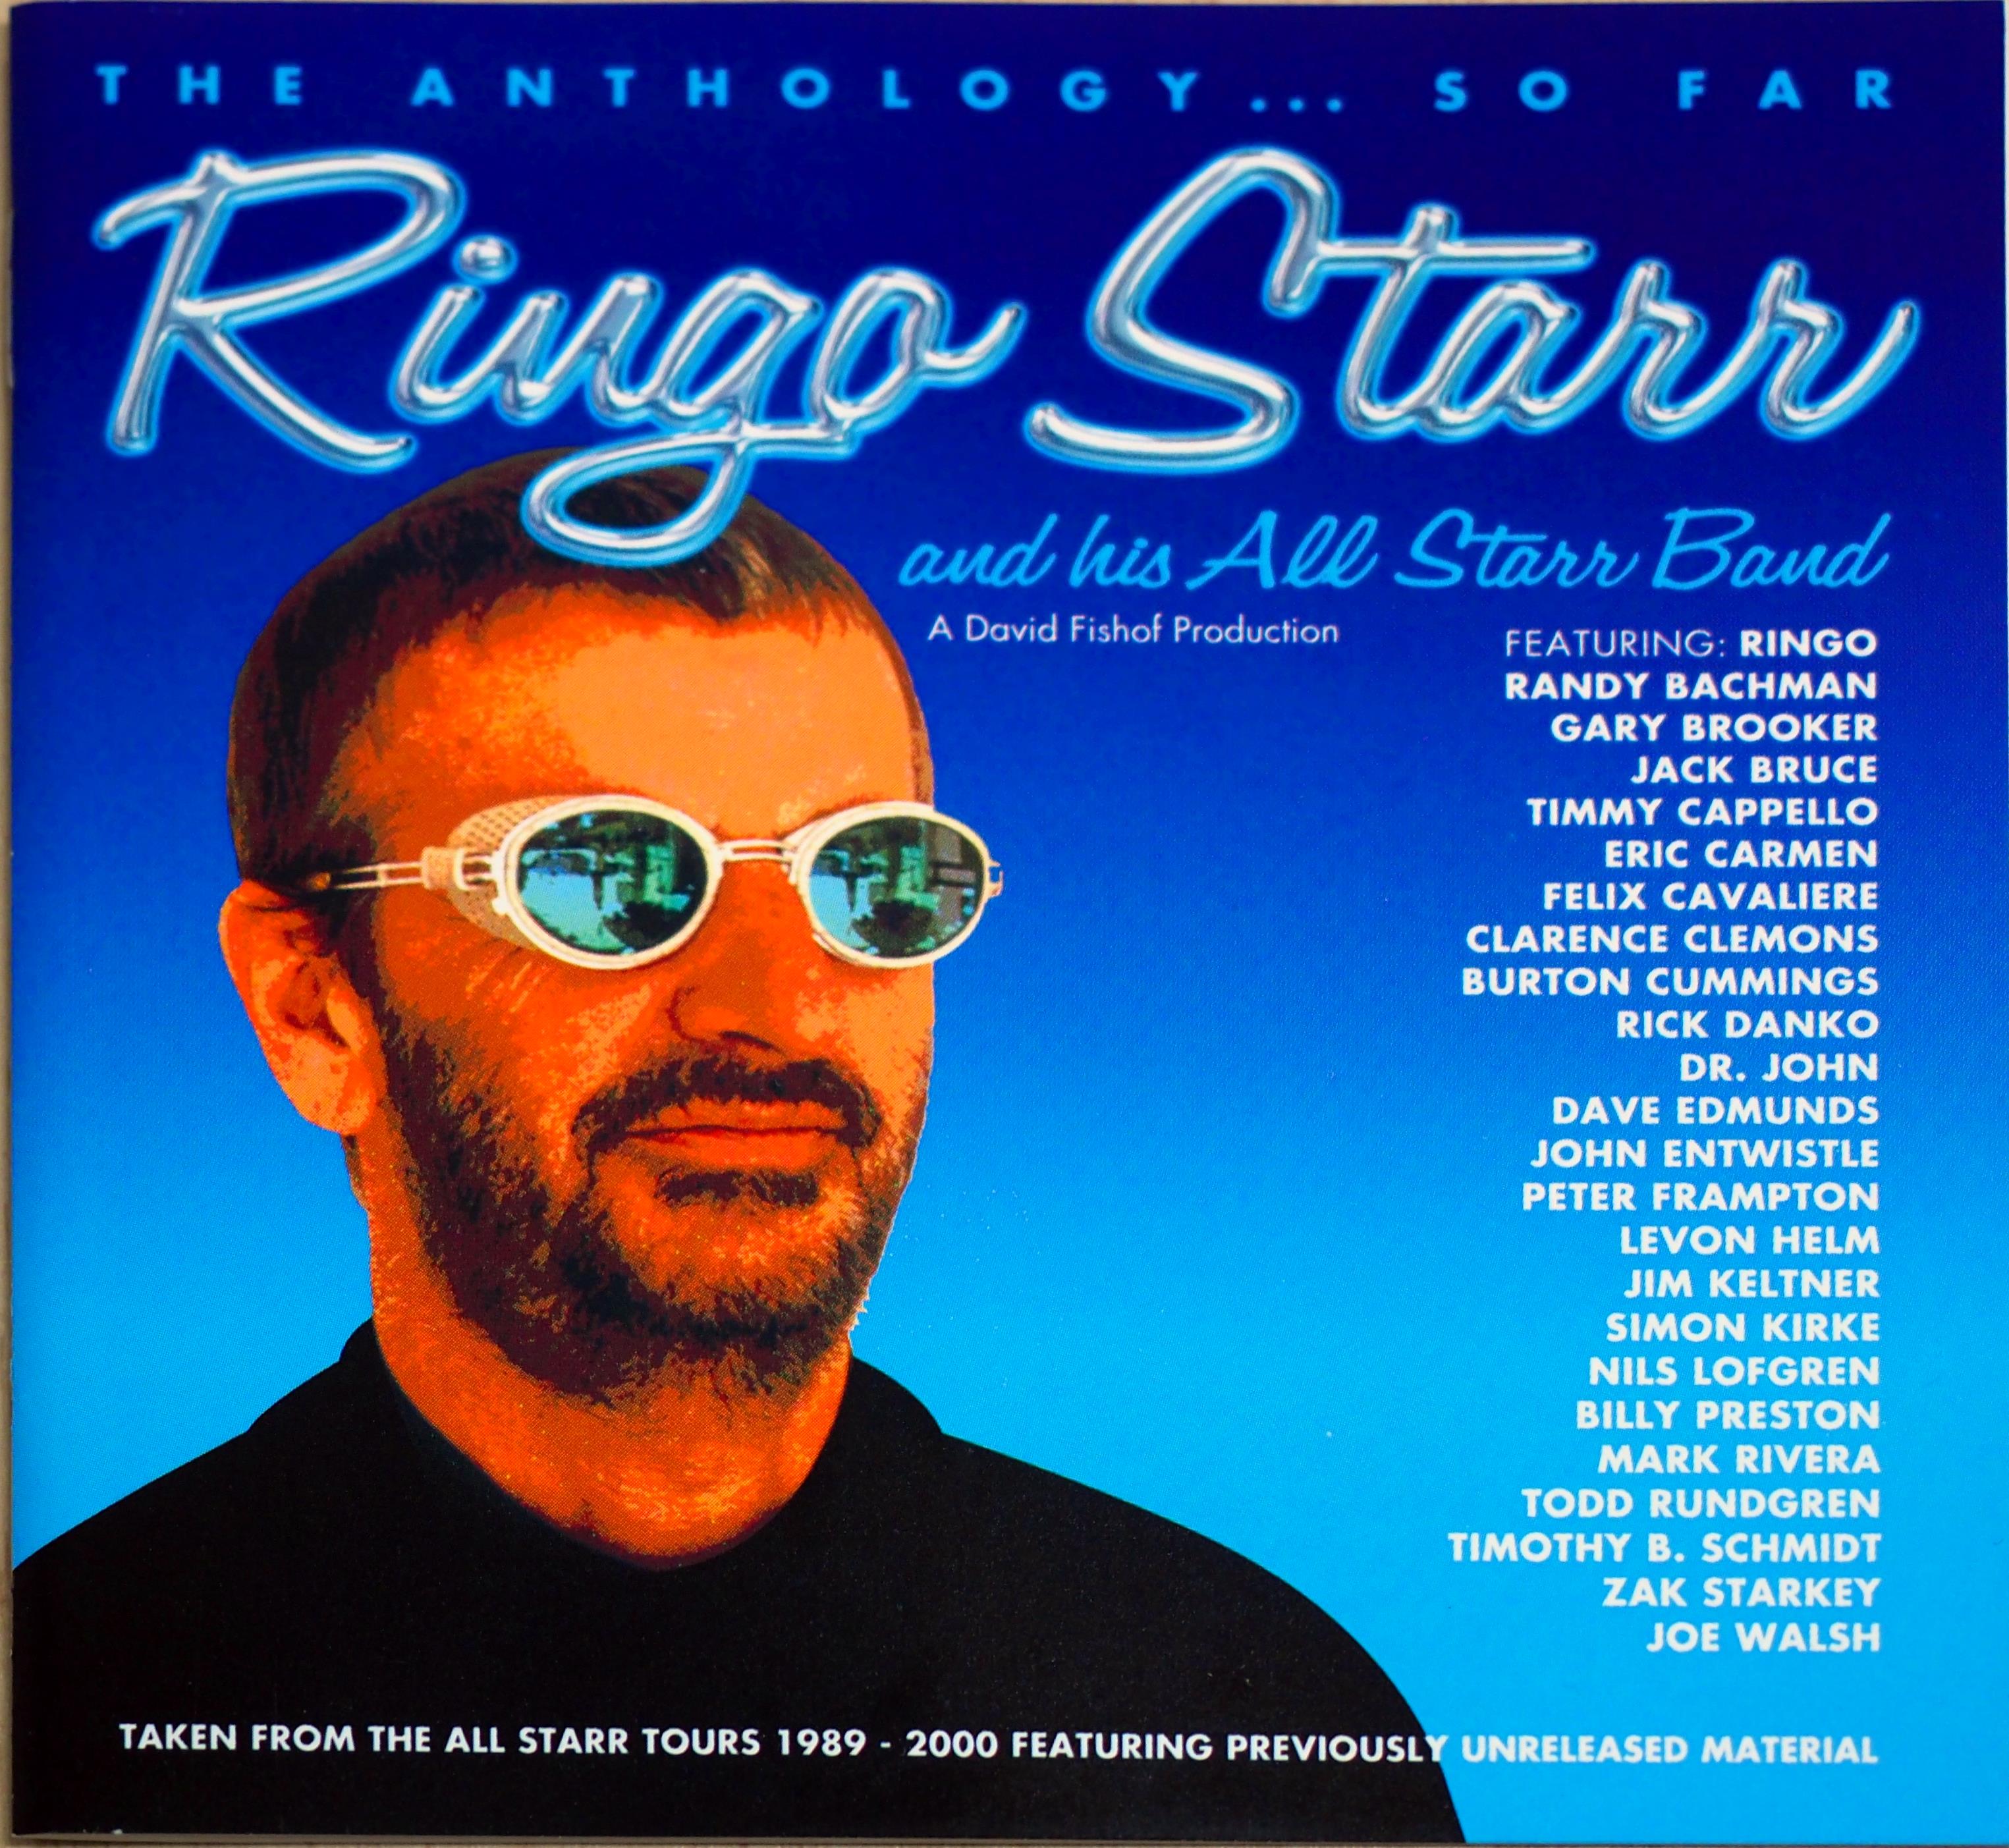 『Ringo Starr & His All-Starr Band: The Anthology... So Far』（輸入盤） リンゴ・スター・アンド・ヒズ・オールスター・バンドの１９８９年の第１期から２０００年の第６期までのベスト・ライブ集。ジャケットに載っているメンバーを見ると、そうそうたるアーティストばかり